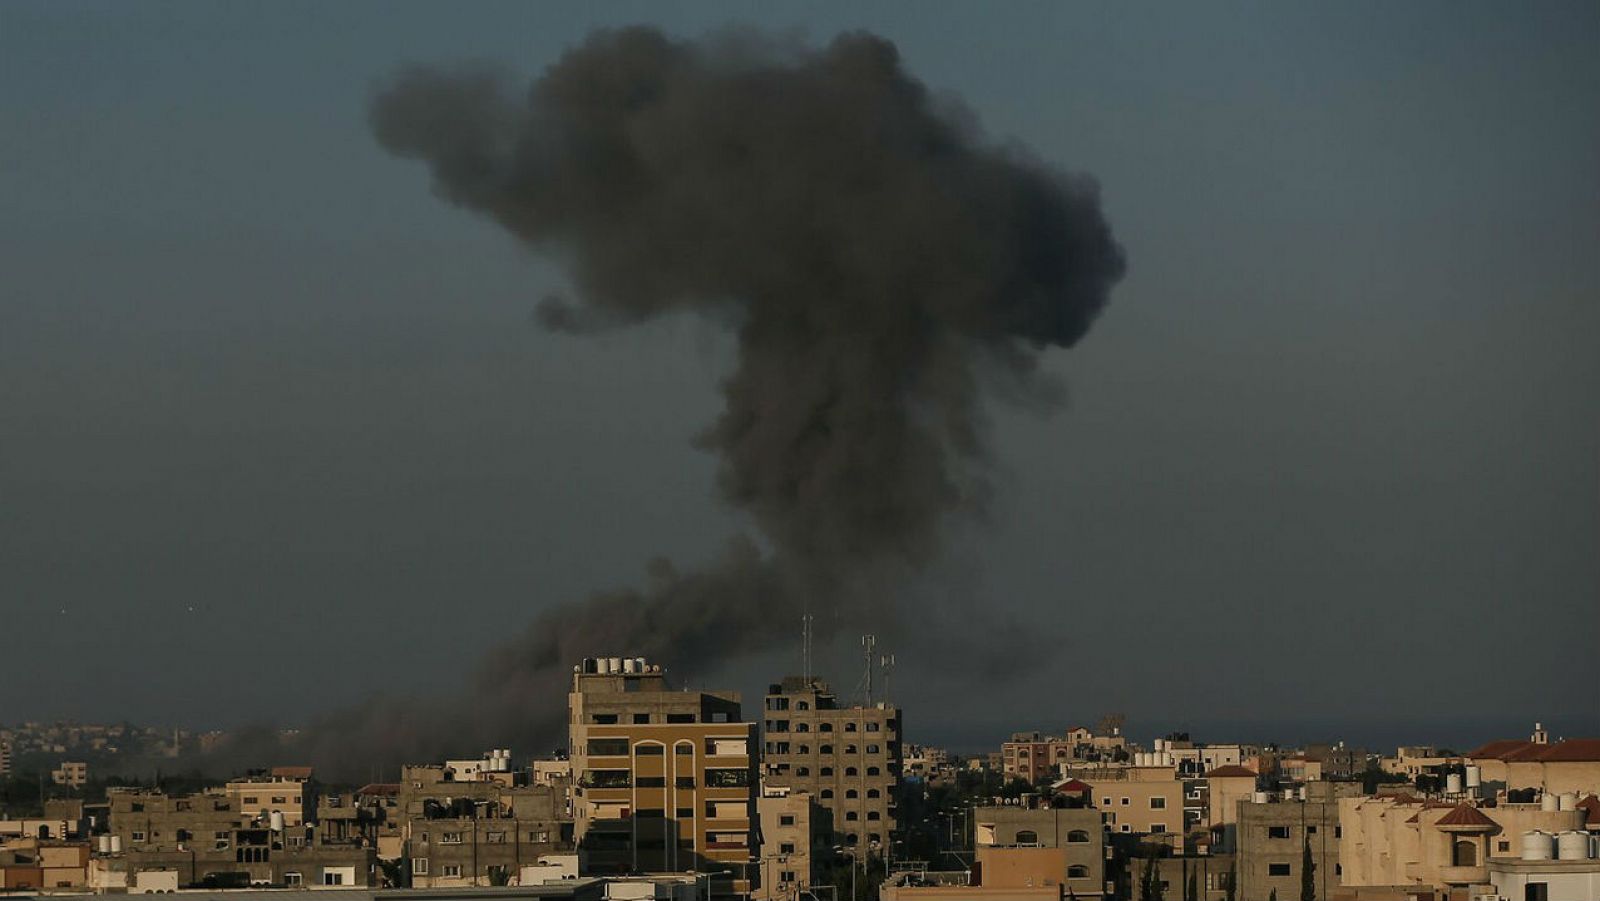 Humo entre edificios después de que aviones de guerra pertenecientes al ejército israelí llevaran a cabo ataques aéreos sobre la ciudad de Gaza.